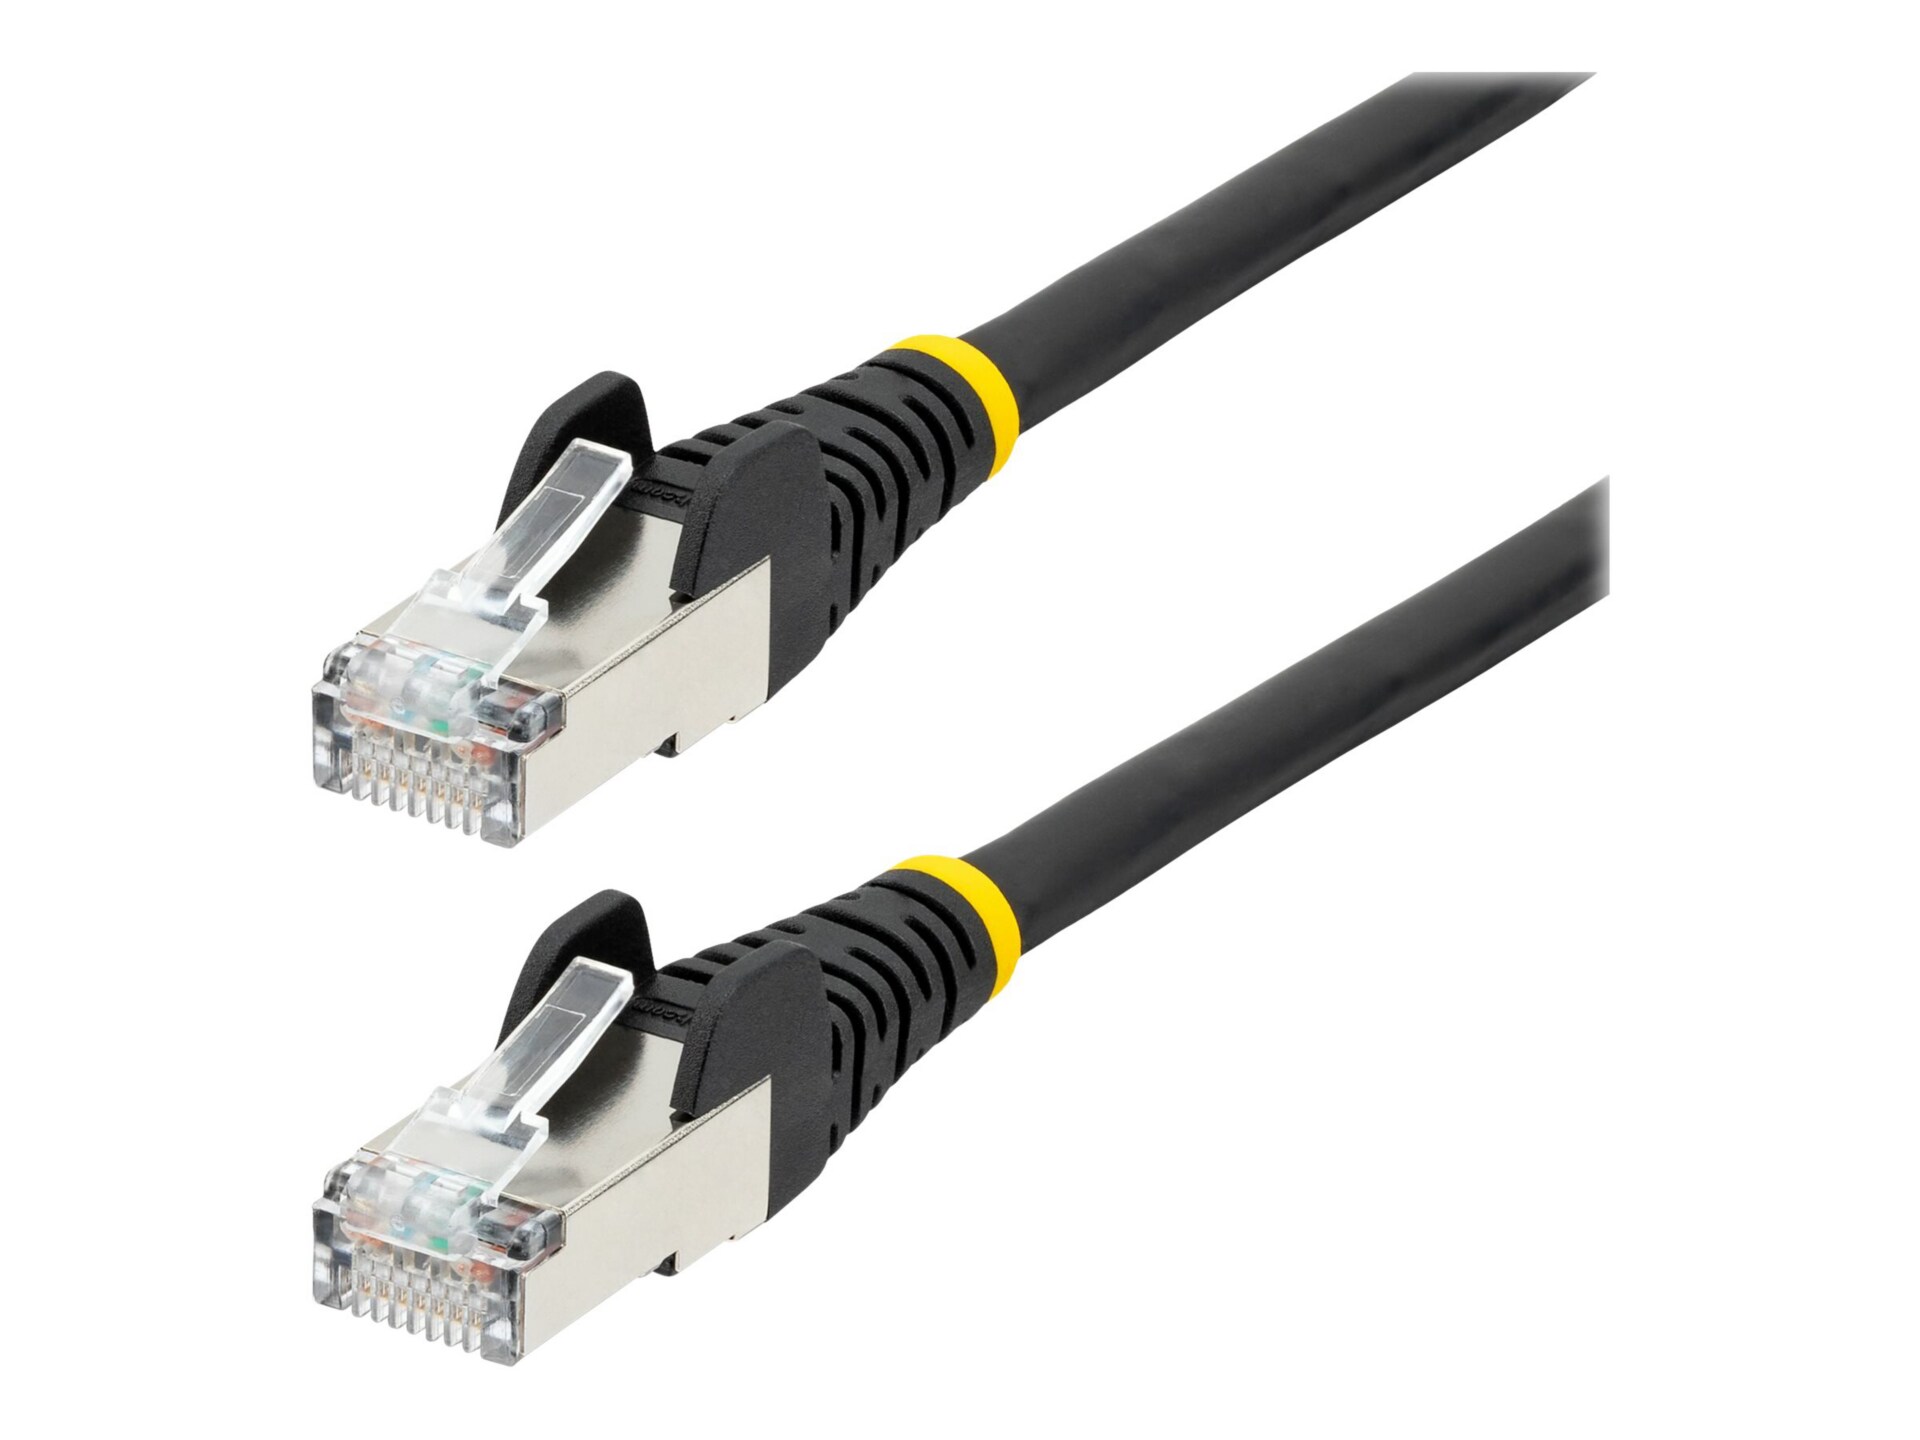 StarTech.com 15ft CAT6a Ethernet Cable, Black Low Smoke Zero Halogen (LSZH)